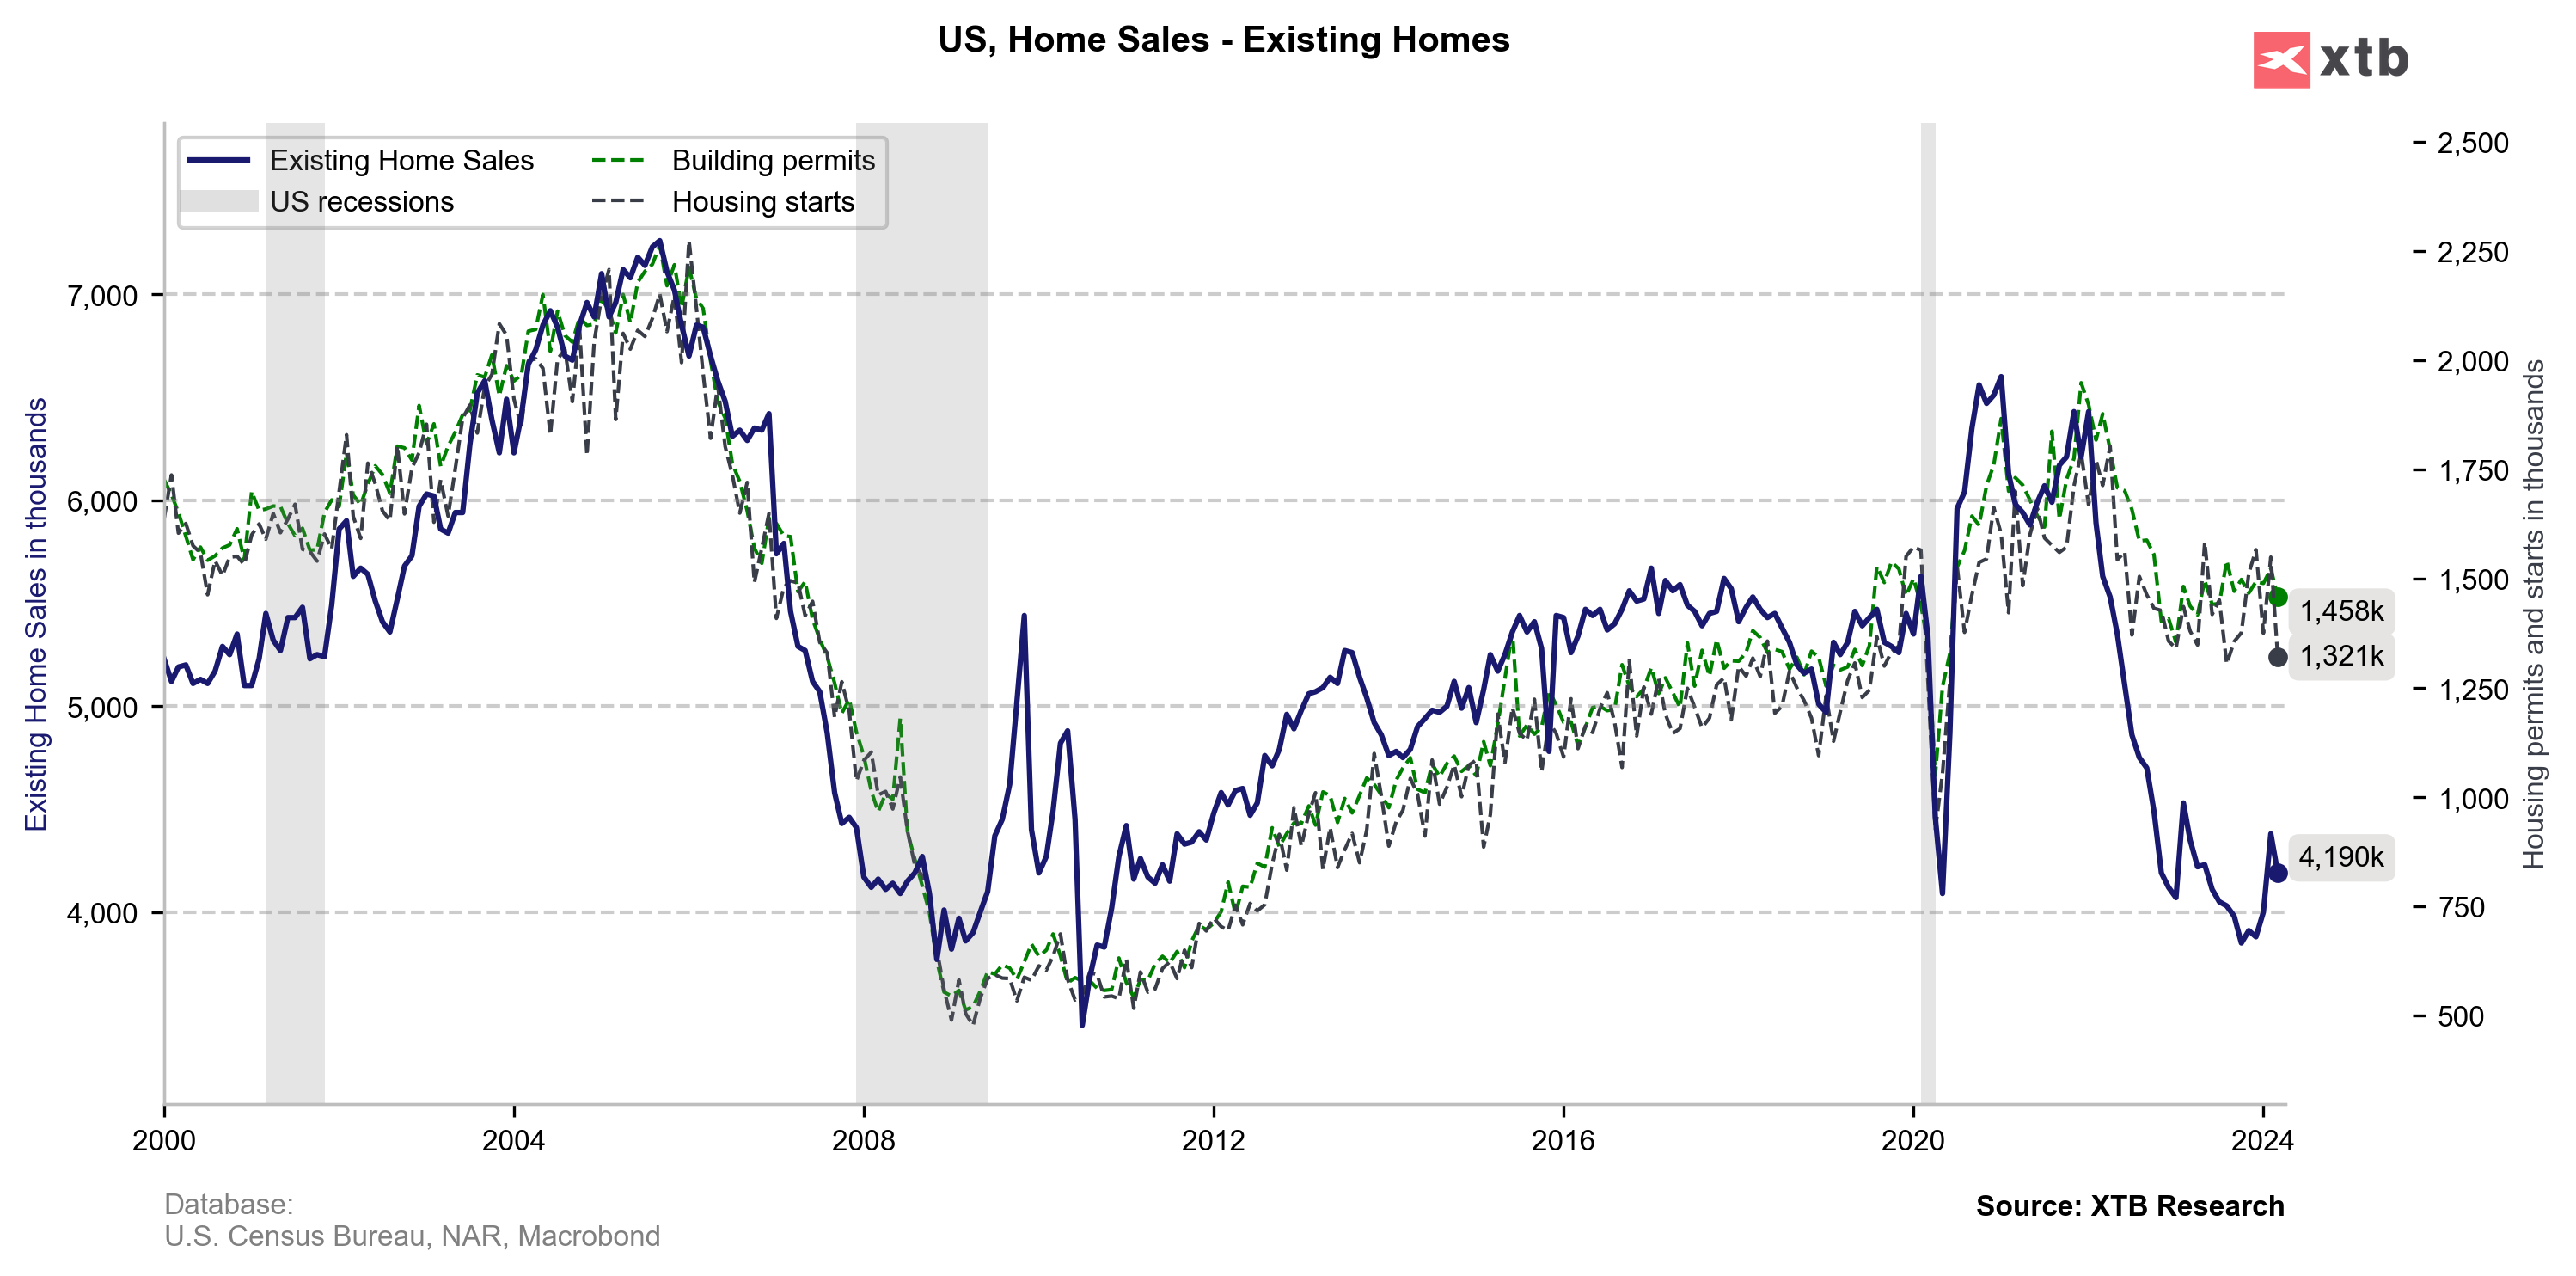 Prodej stávajících domů v USA mírně nižší, než se očekávalo